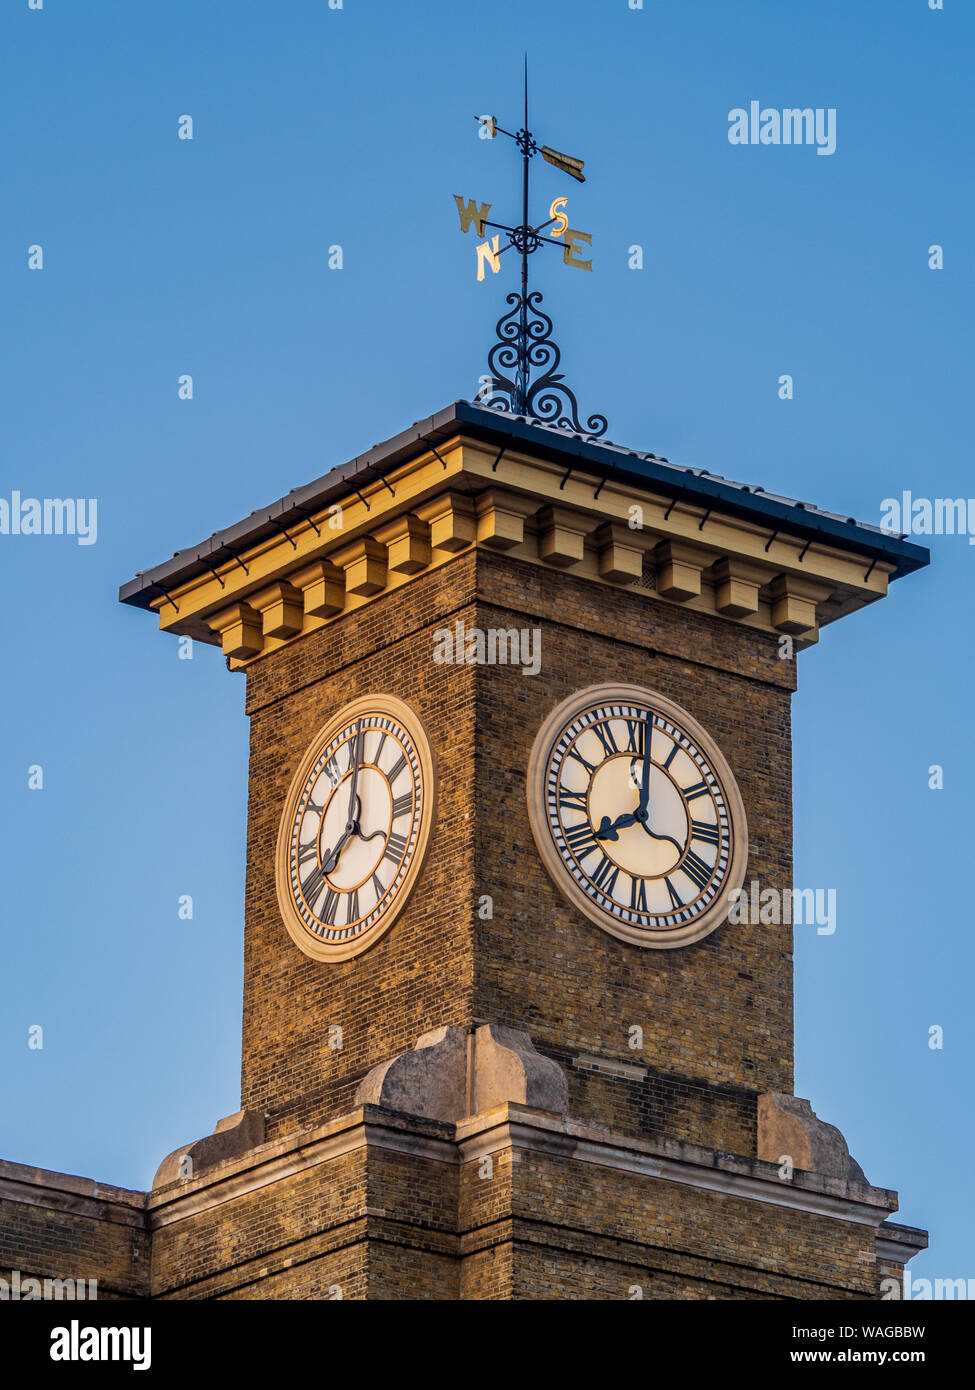 La gare de Kings Cross Londres Horloge Banque D'Images